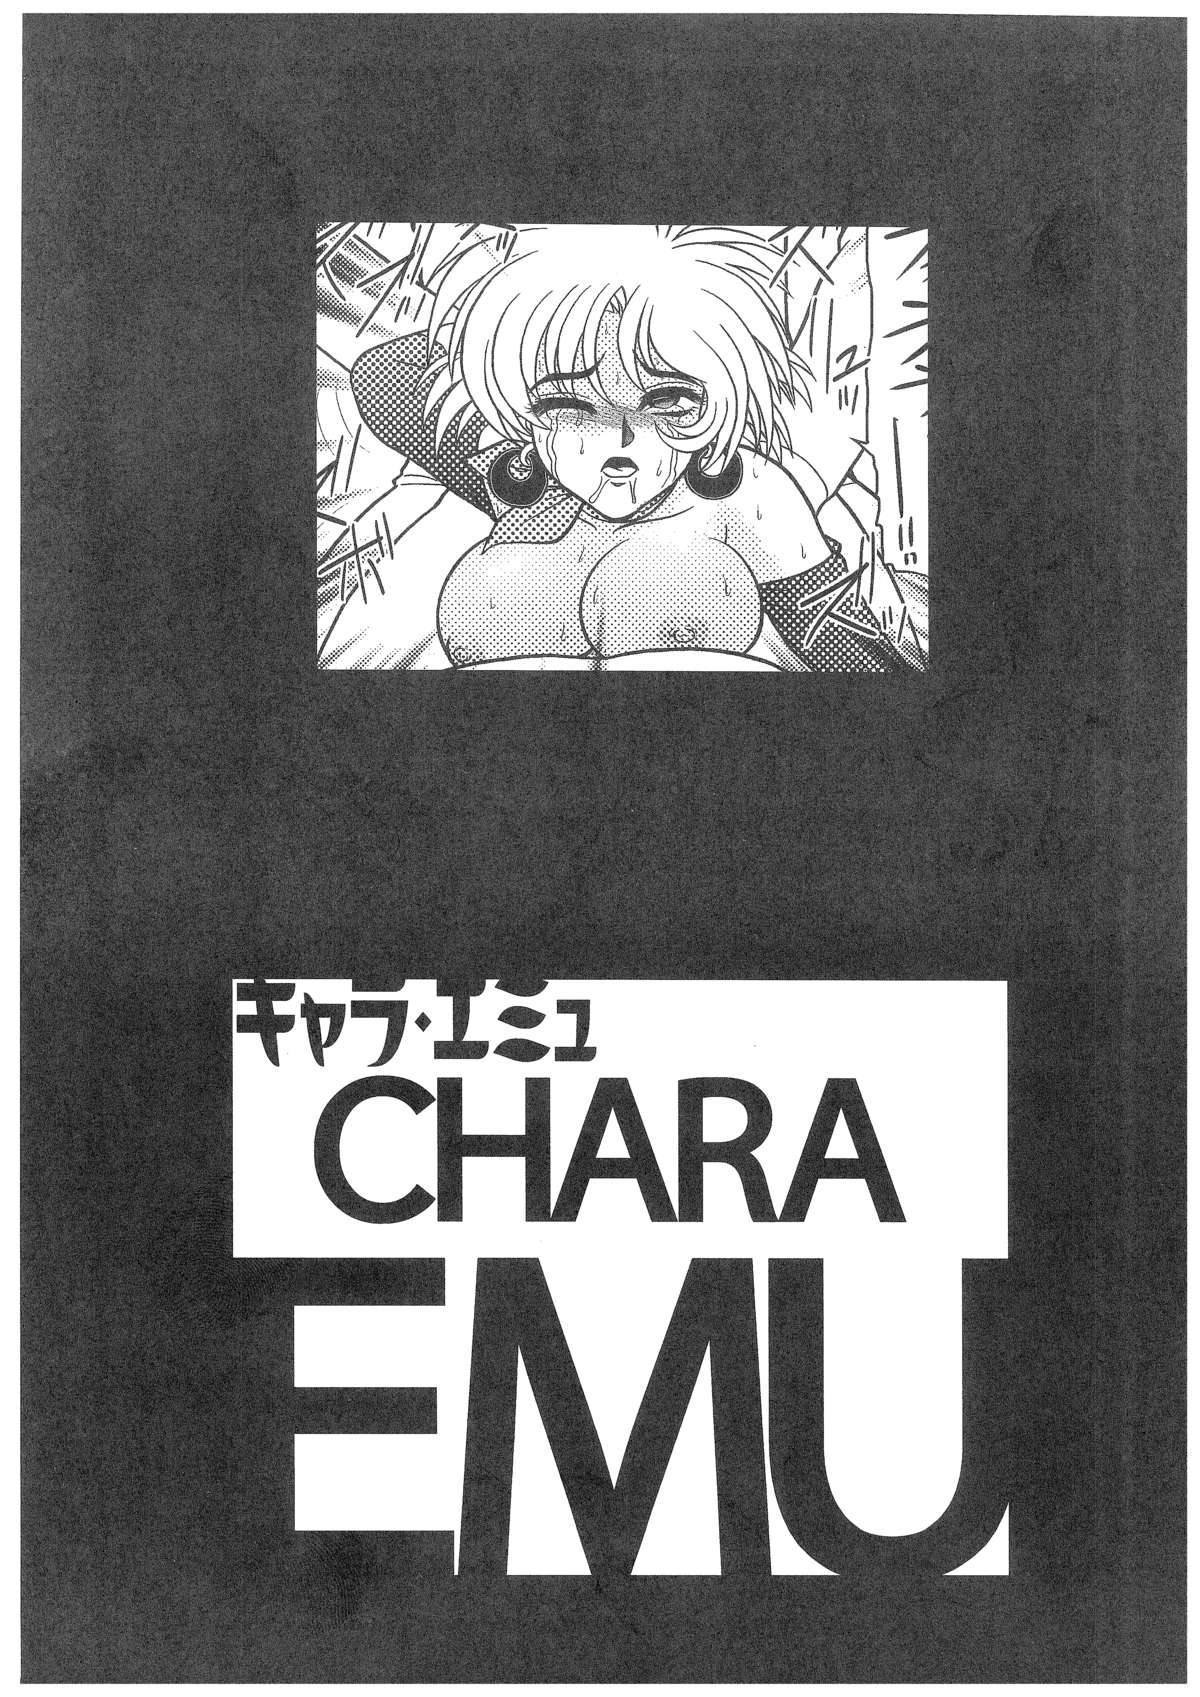 [Dakimakuma, Jingai Makyou Club (WING☆BIRD)] CHARA EMU W☆B010 GONDAM 008 ZZ-W-F91 (Various) page 2 full